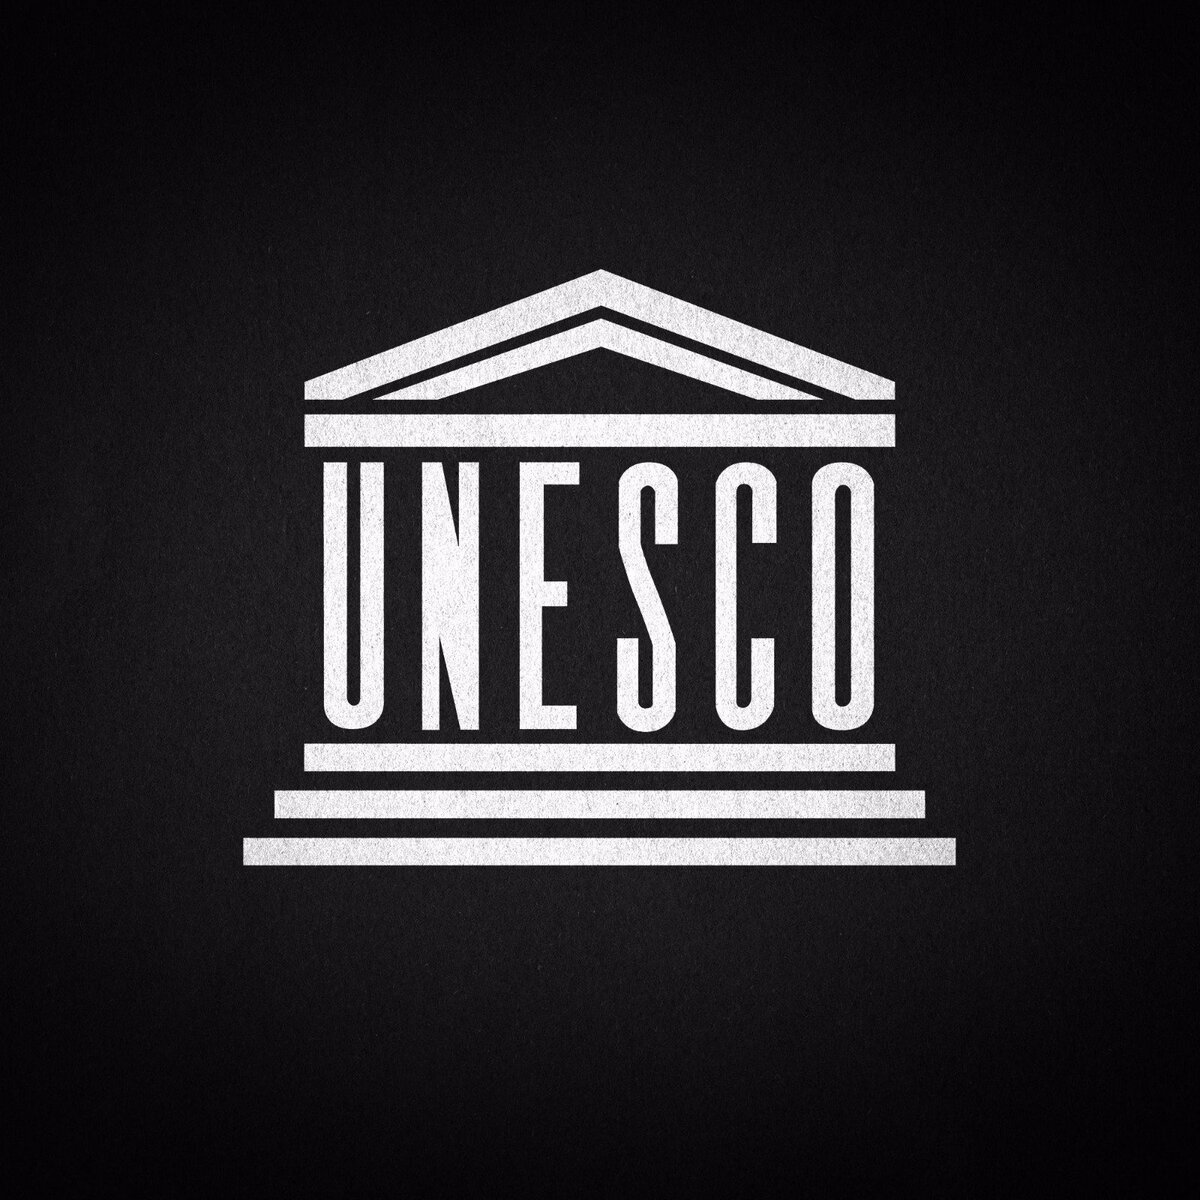 Что такое ЮНЕСКО — расшифровка и предназначение организации